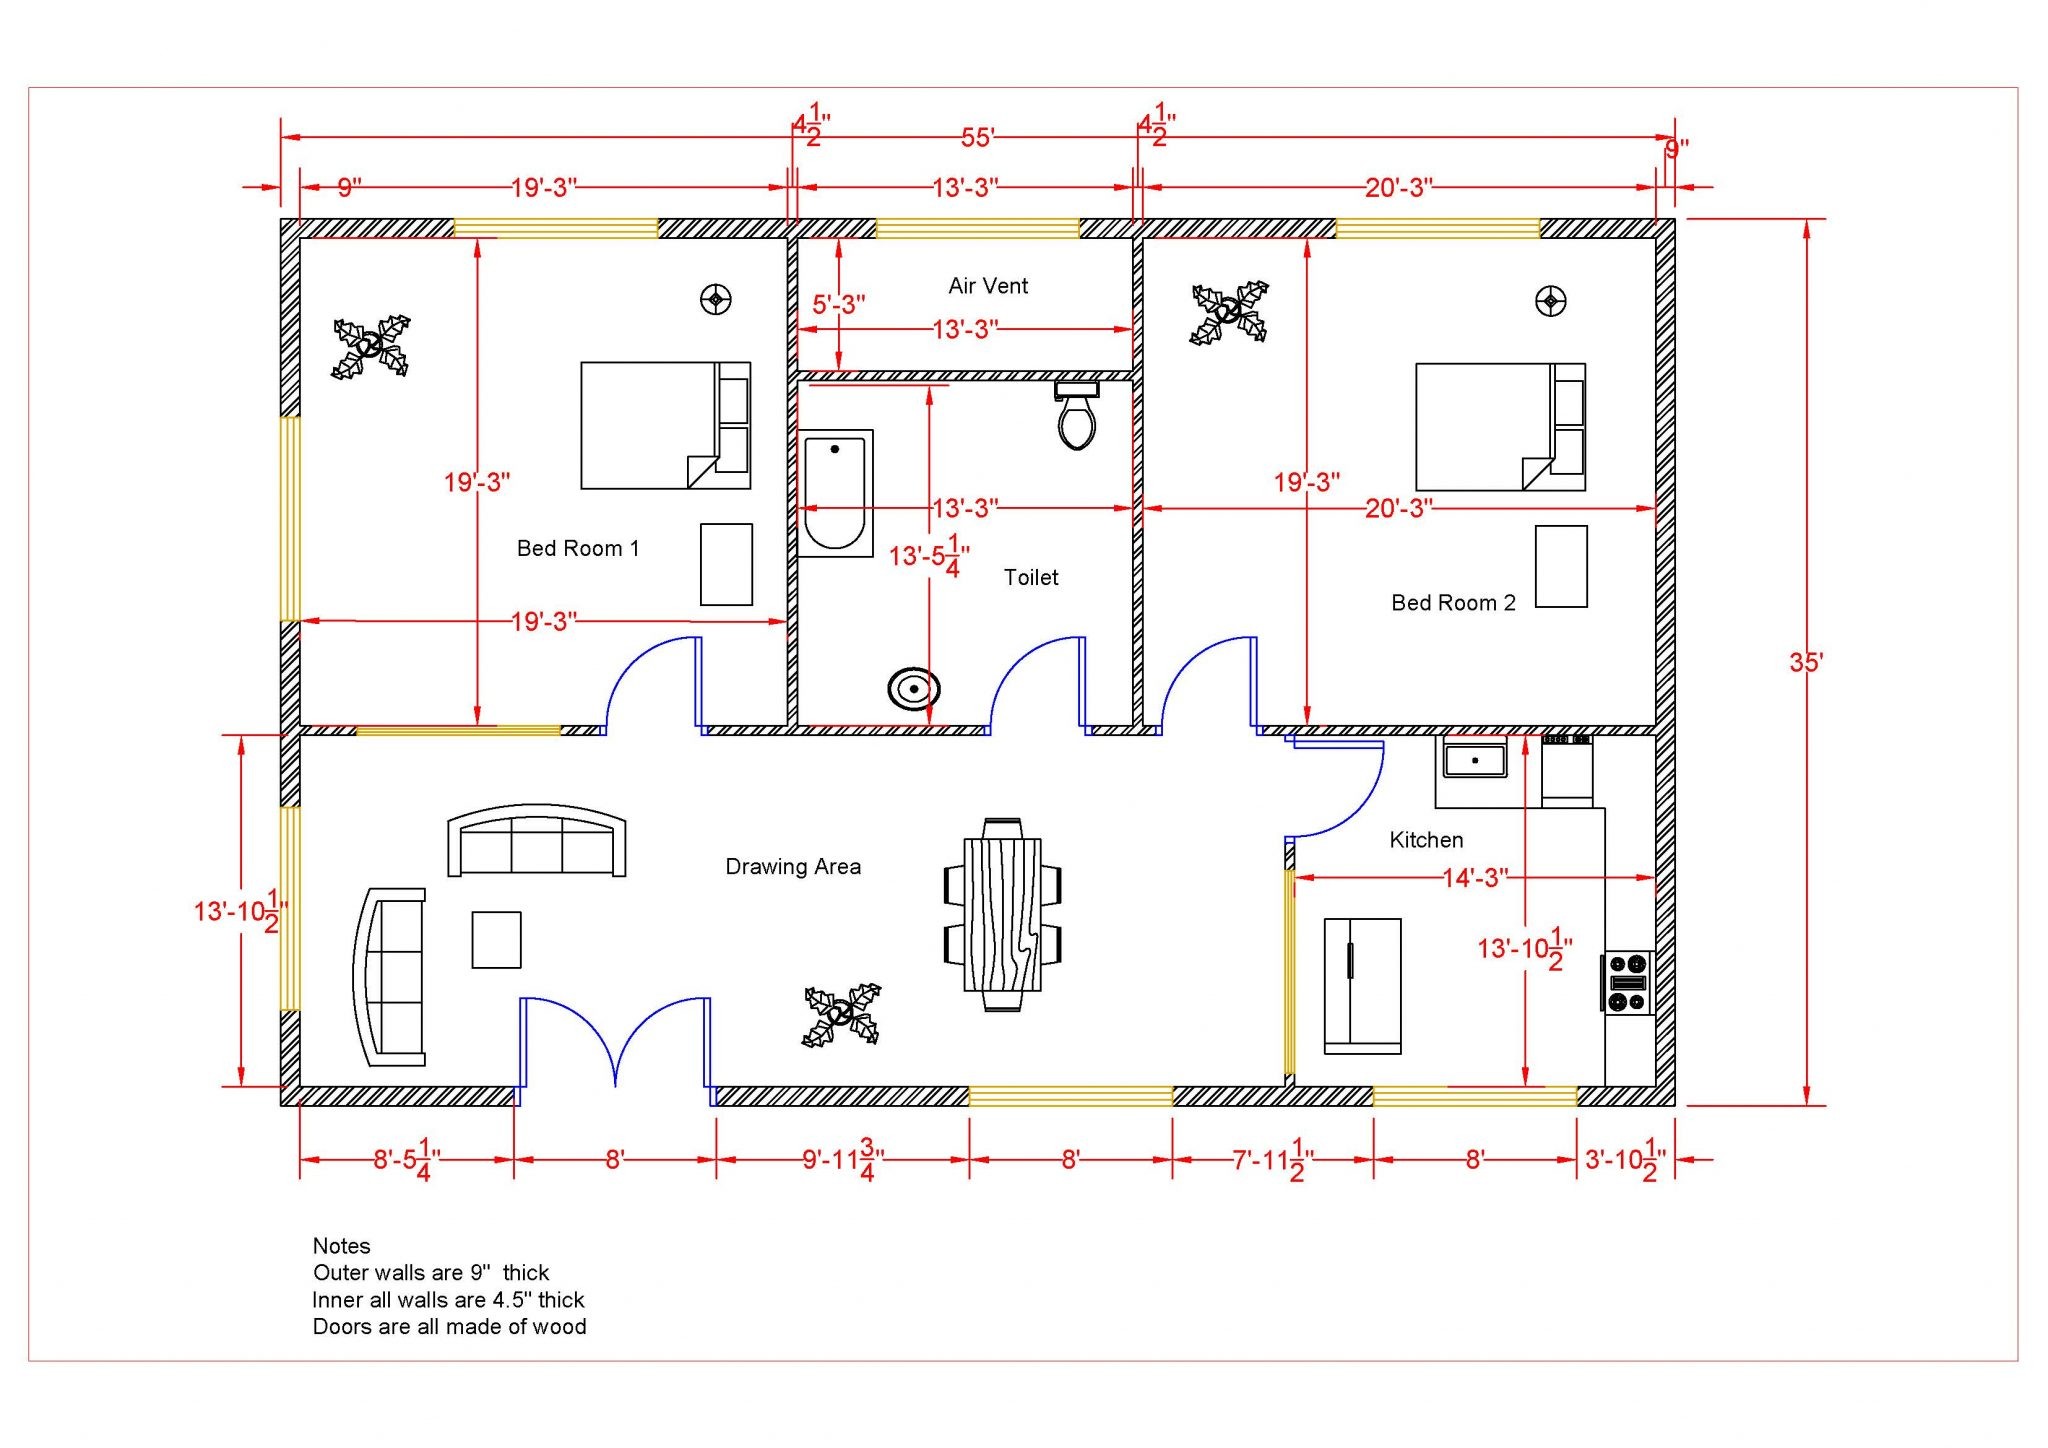 Floor Plan Sample Autocad - Autocad Plan Floor 2d House Floorplan Pdf ...